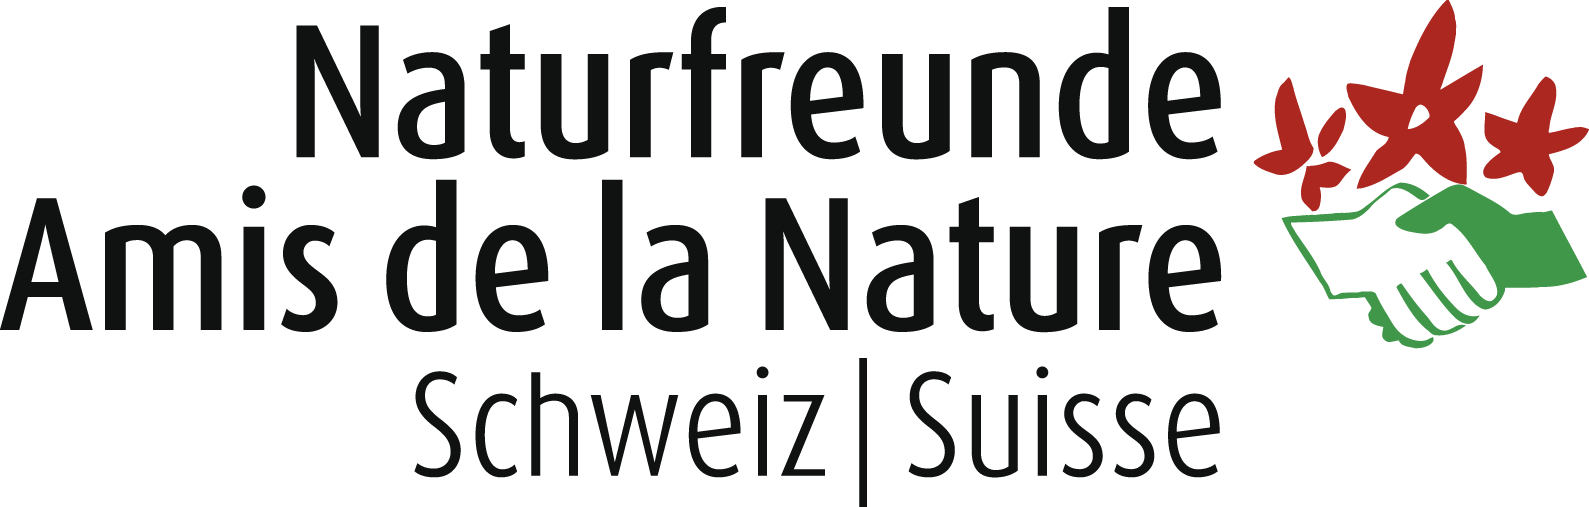 Naturfreunde Schweiz